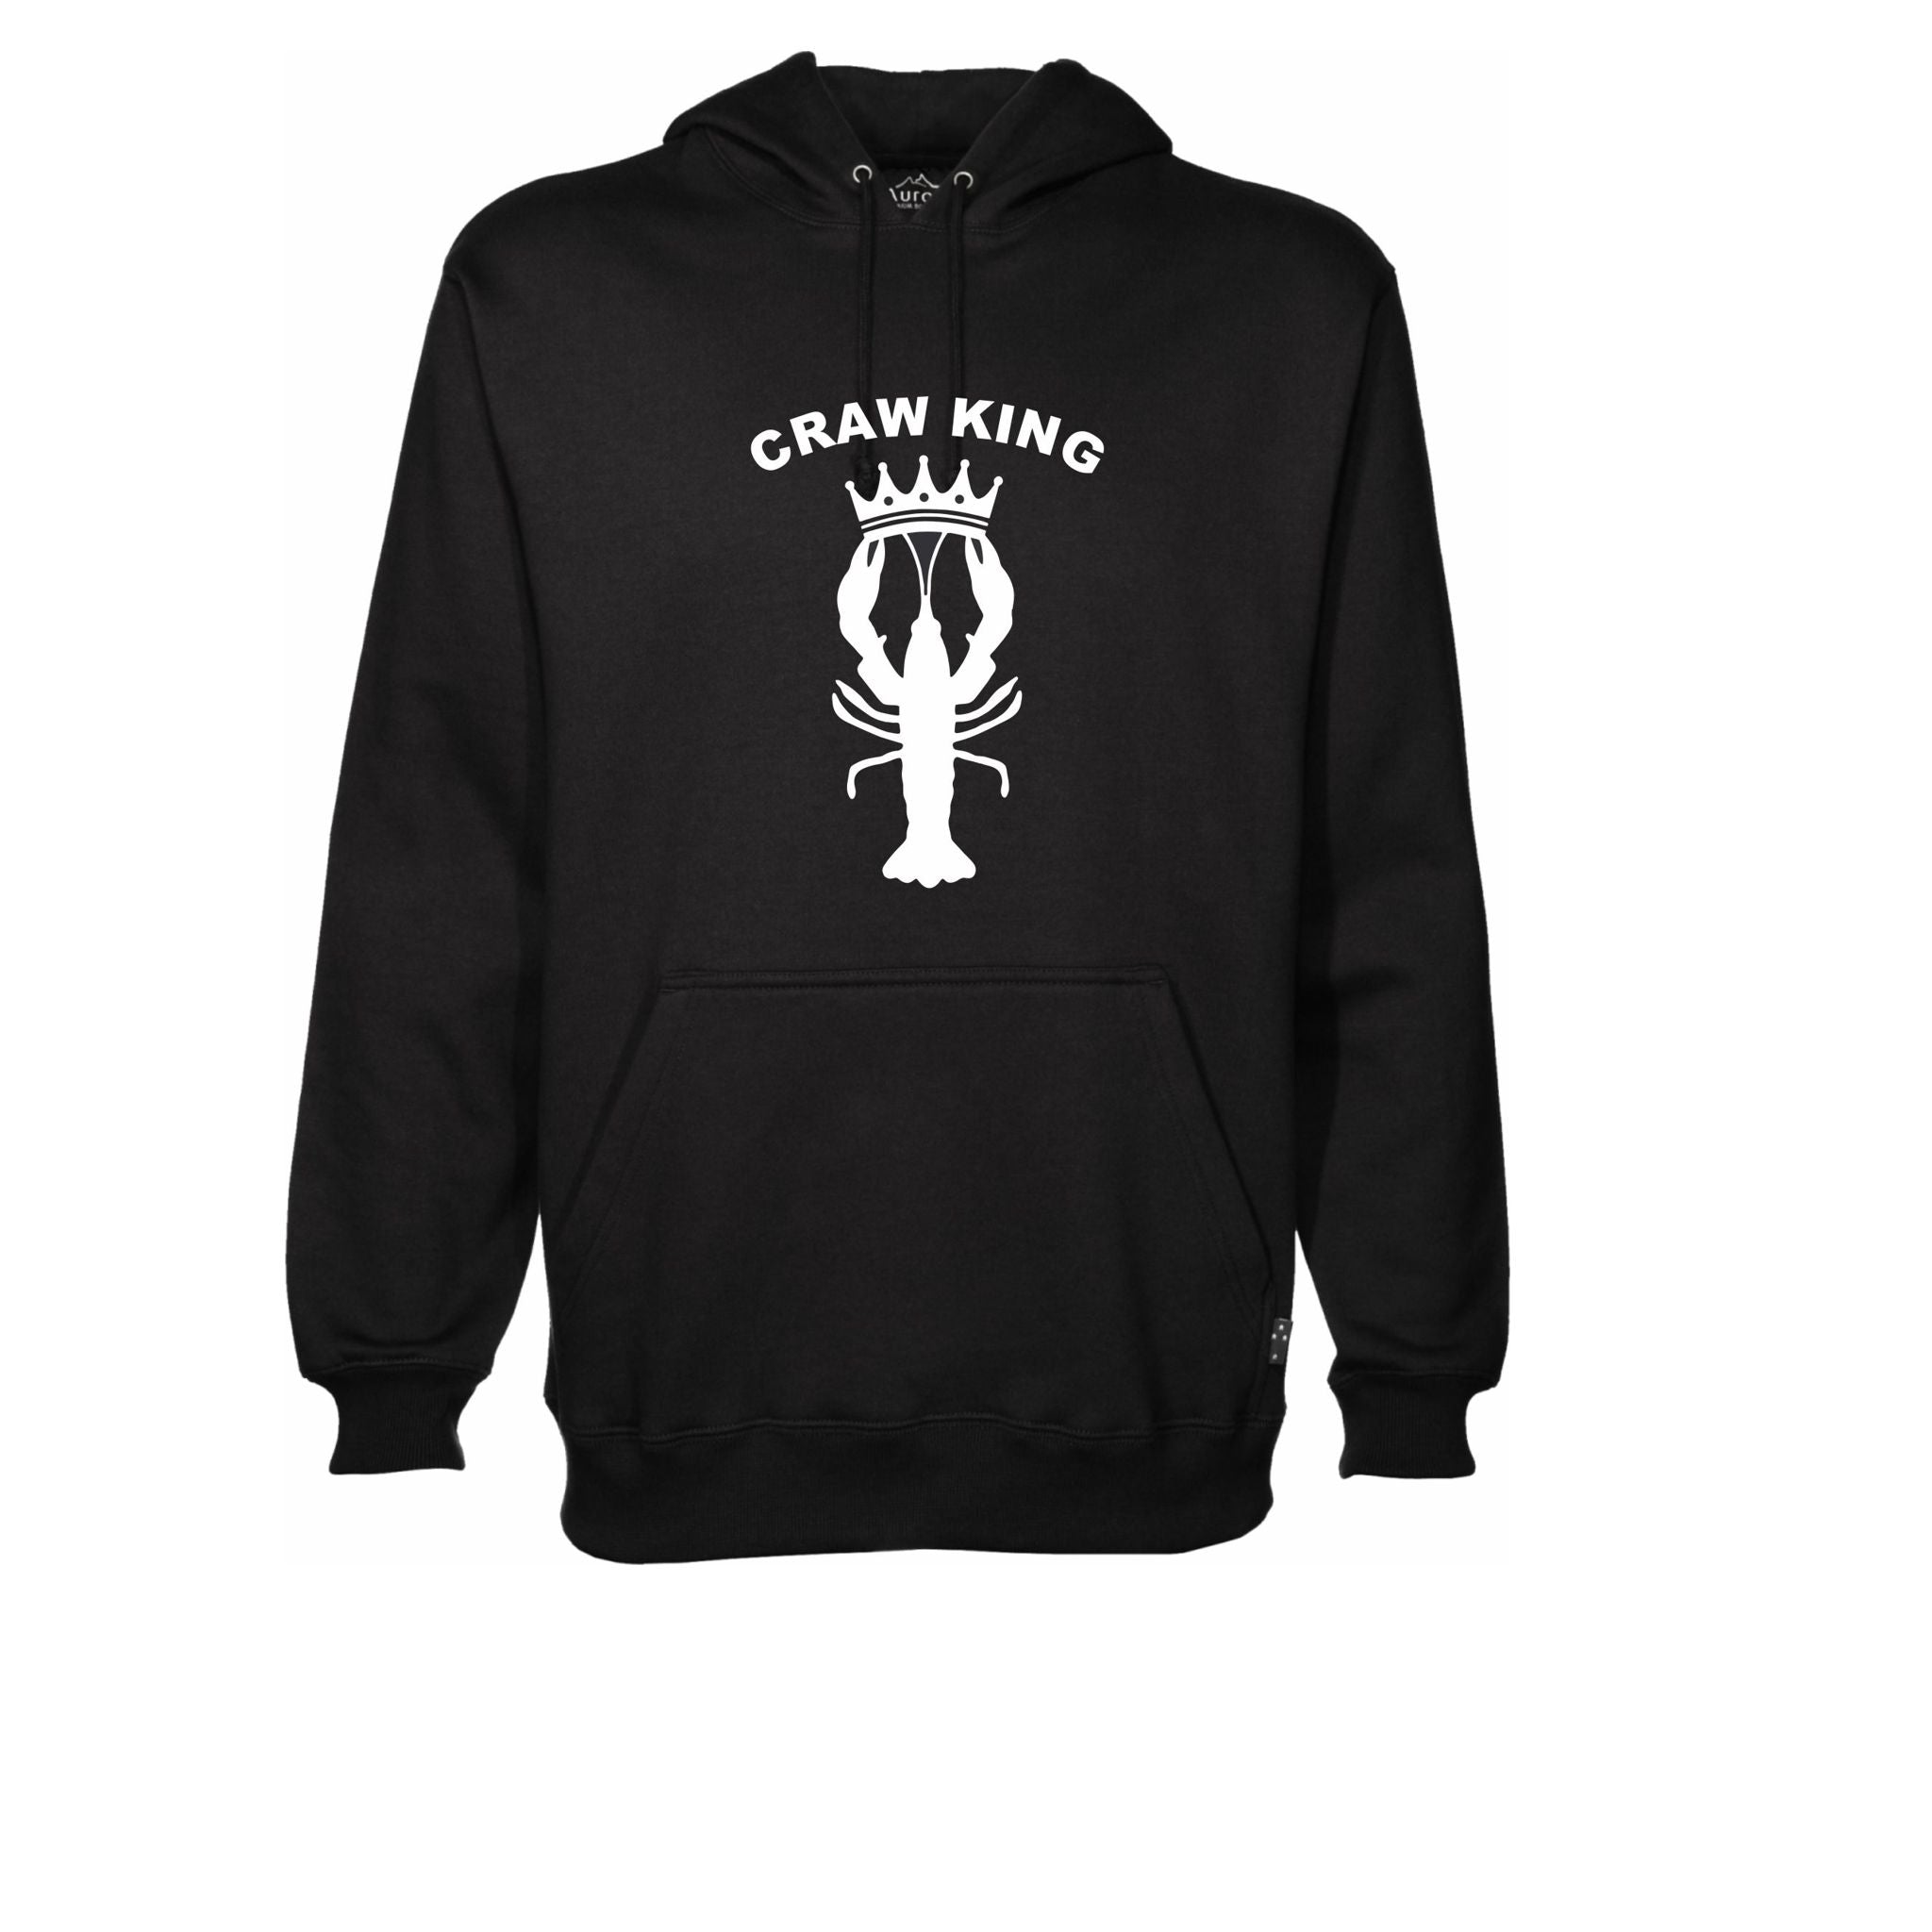 Craw King Hoodie Sweatshirt - Cozy and Stylish